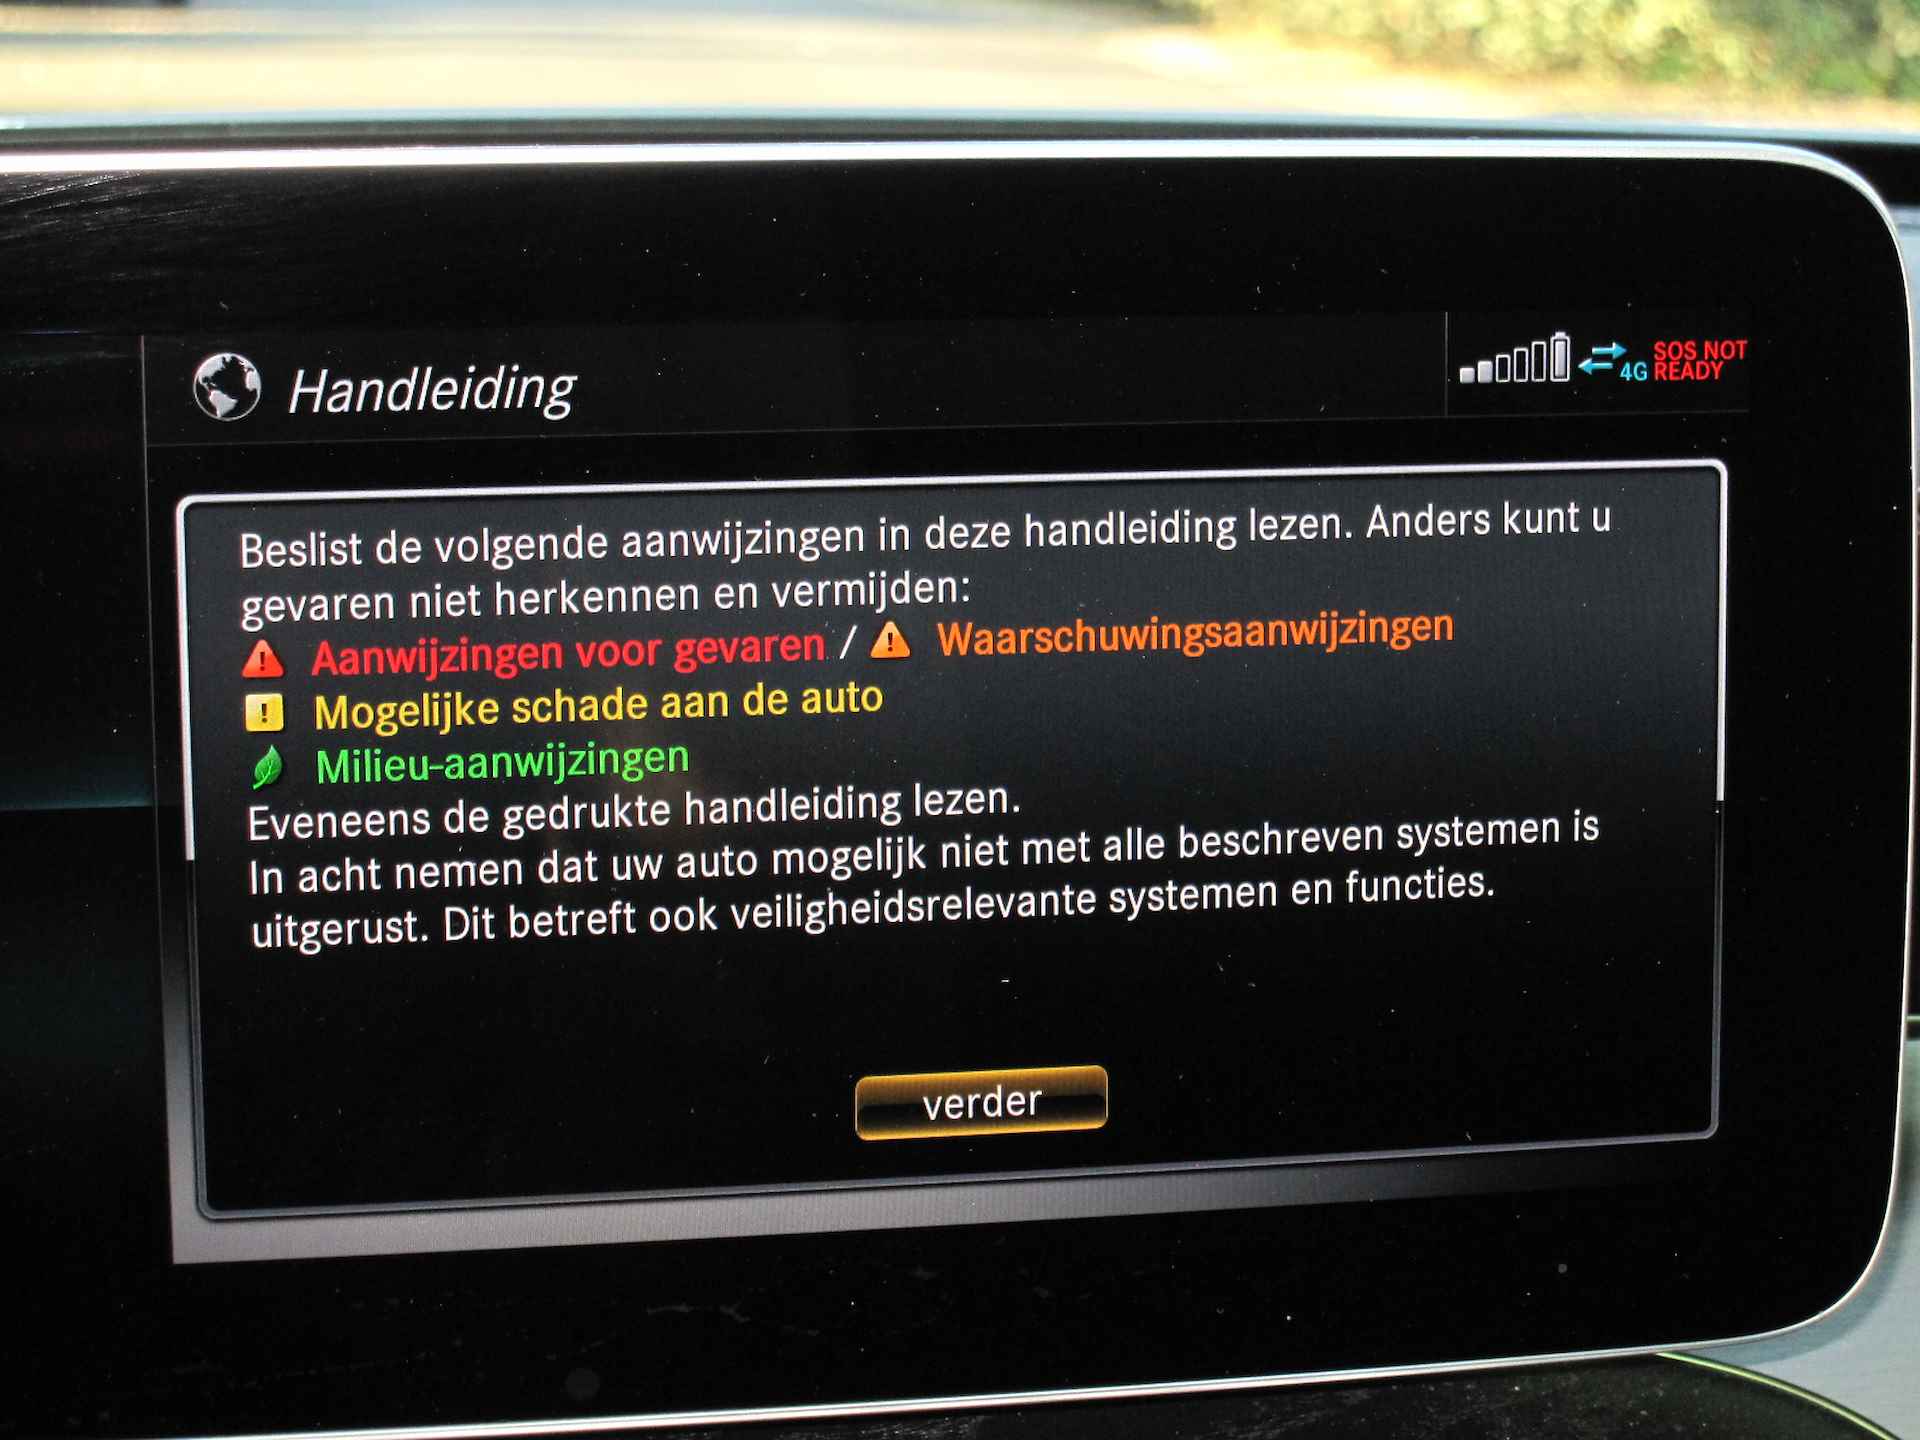 Mercedes-Benz C-Klasse Cabrio 200 4MATIC AMG-LINE AUTOMAAT 1E EIGENAAR!! COMAND NAVIGATIE, APPLE CARPLAY, NEKVERWARMING, LEER, STOELVERWARMING, STOELVENTILATIE, MEMORYSTOELEN, 360 GRADEN CAMERA, PARKEERHULP VOOR/ACHTER, WINDSCHERM, MULTIBEAM LED, 18"AMG-VELGEN, ENZ. ENZ. FULL OPTIONS!! - 96/188